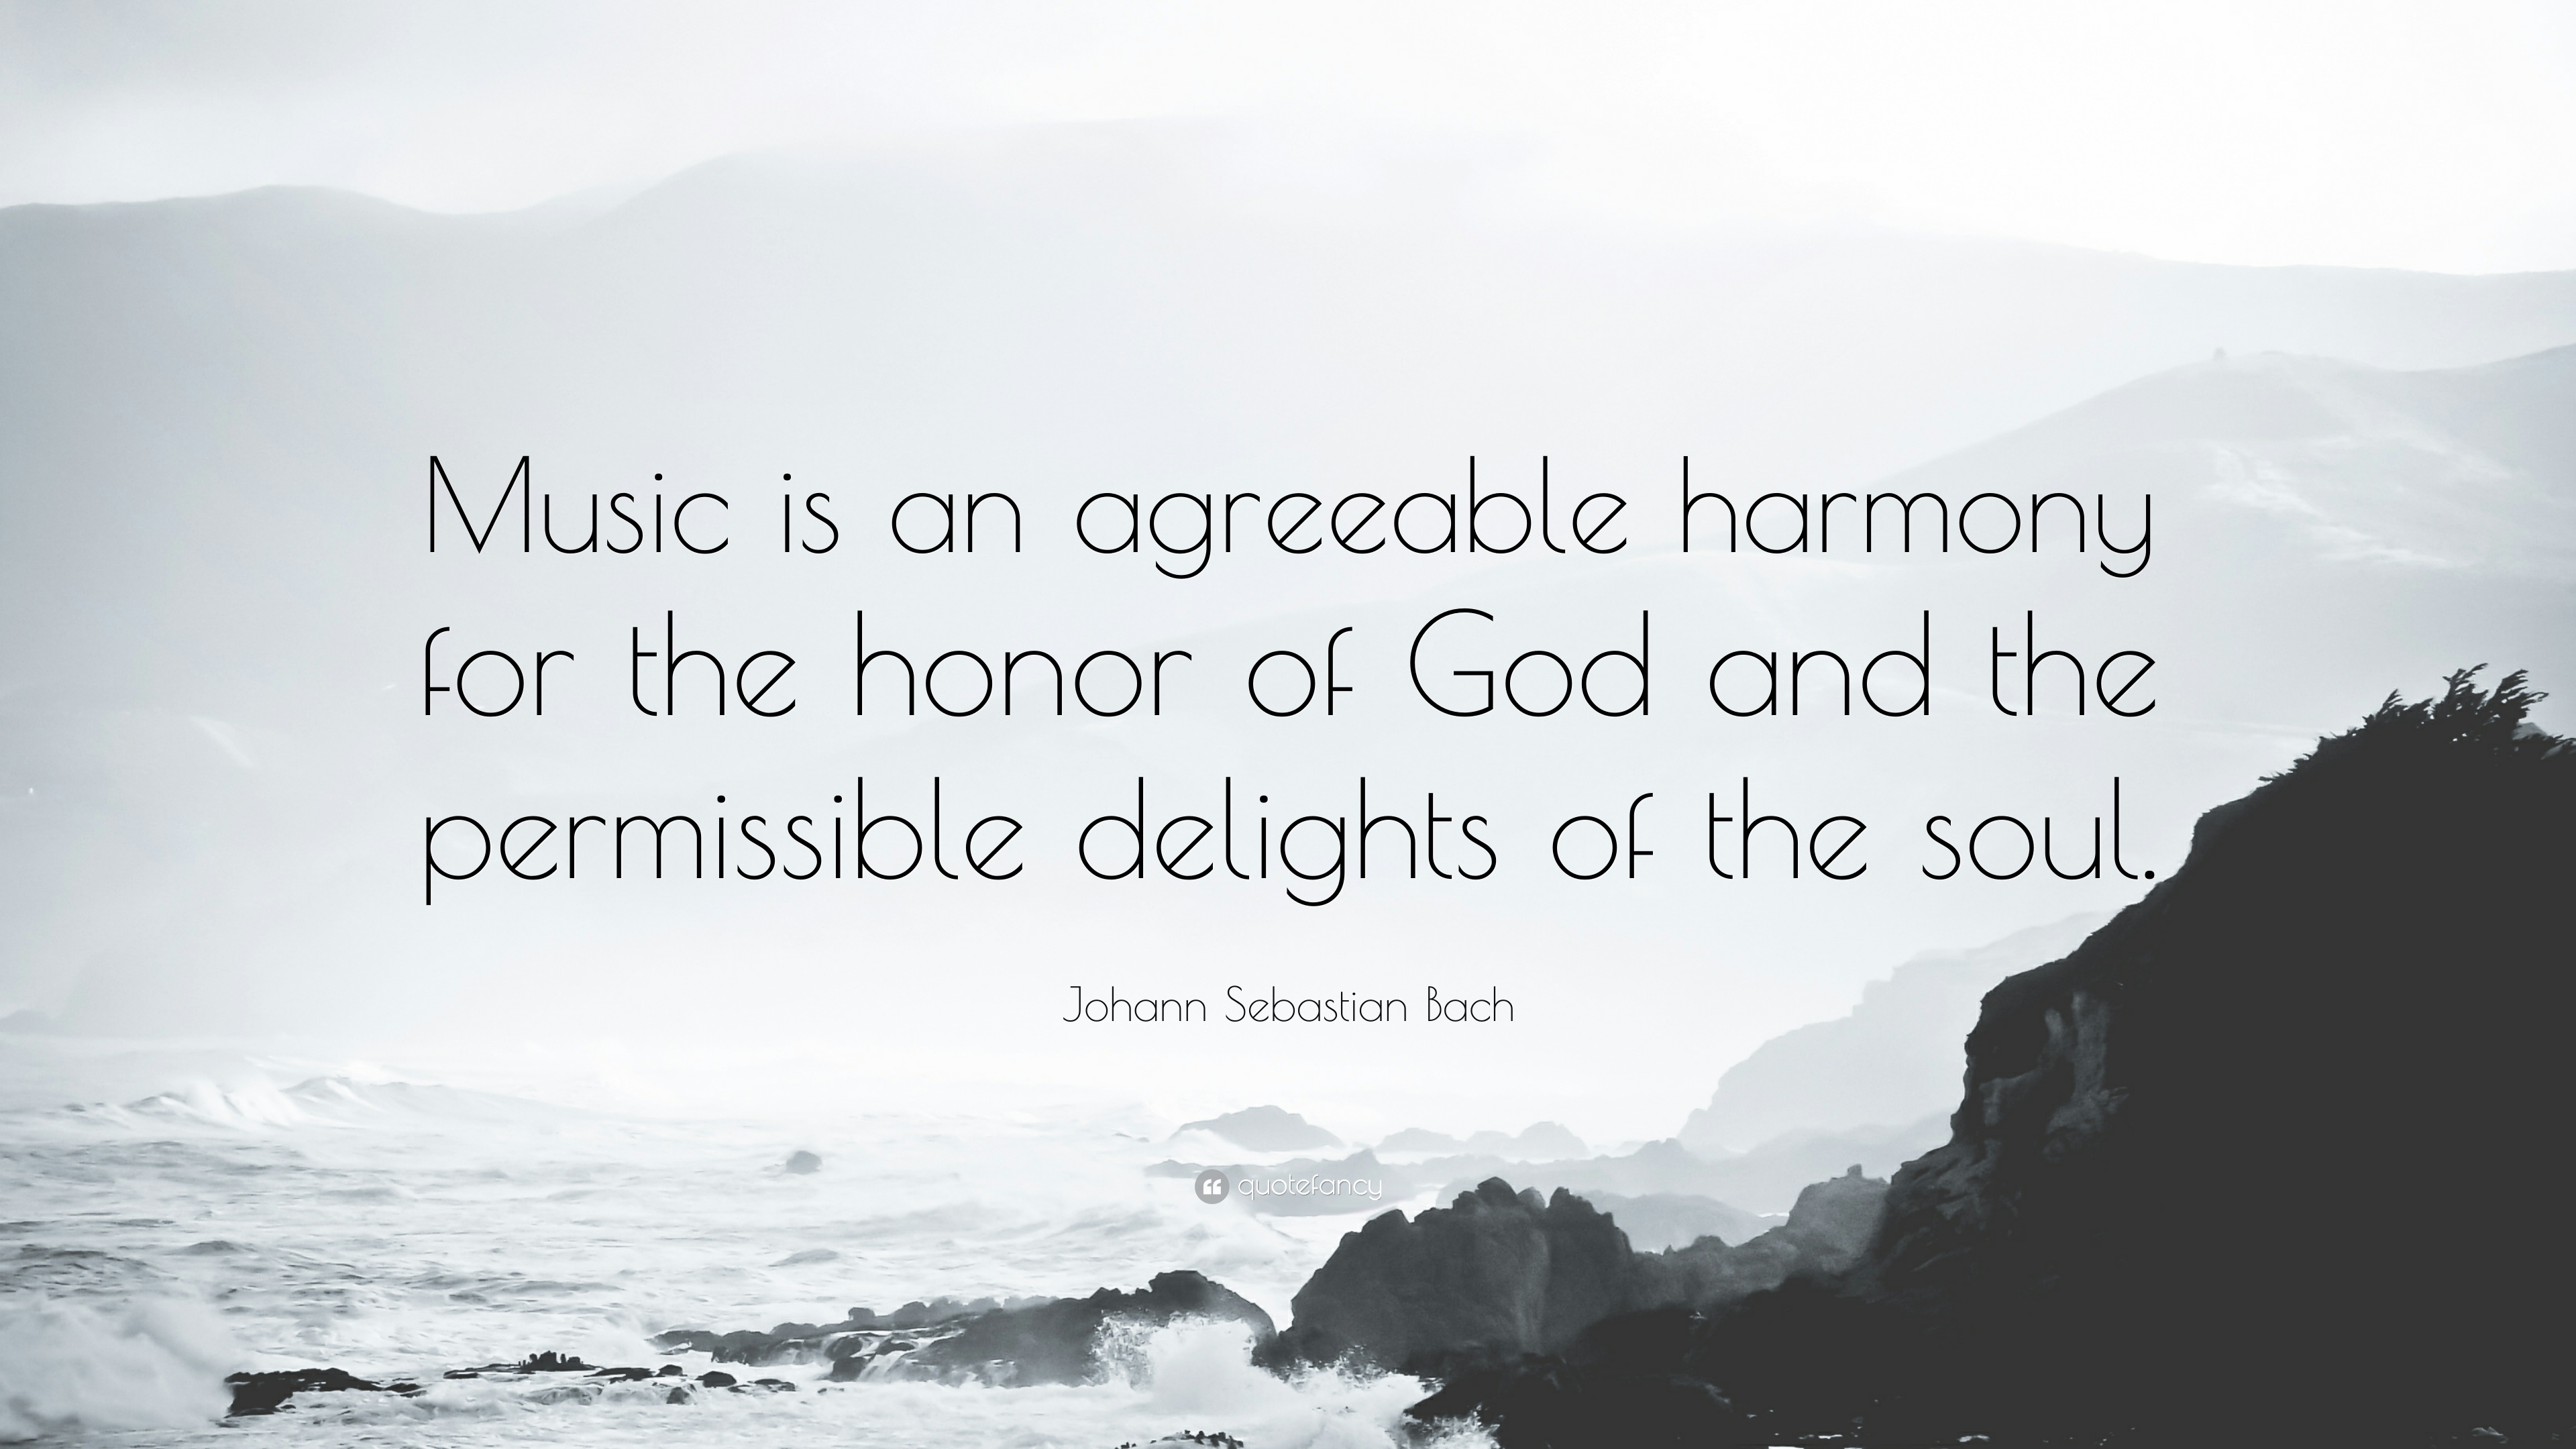 Johann Sebastian Bach Quote: “Music is an agreeable harmony